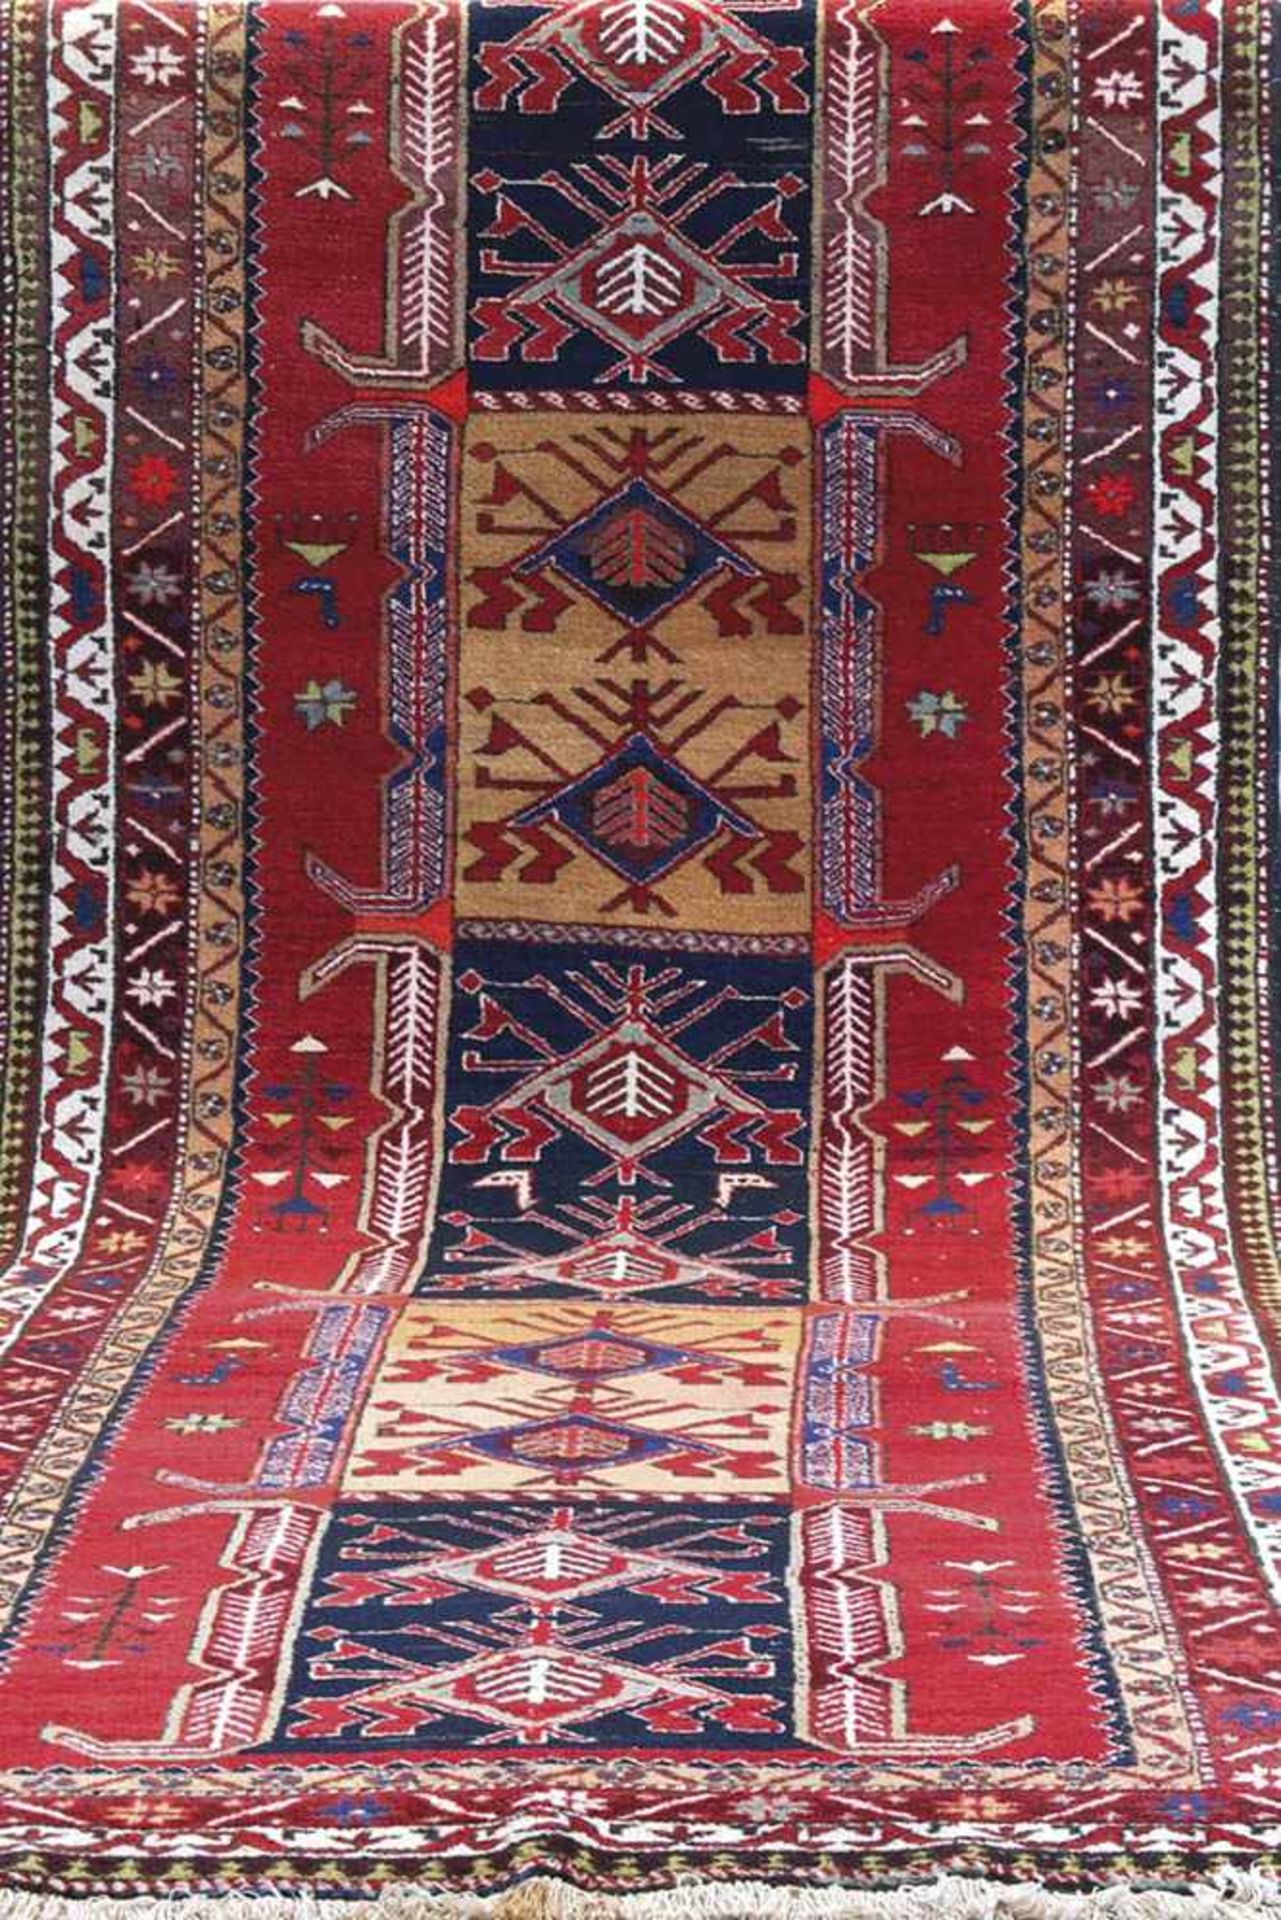 Meshgin, Persien, mehrfarbig, mit durchgehendem Muster, Fransen stellenweise verschmutzt,350x140 cm